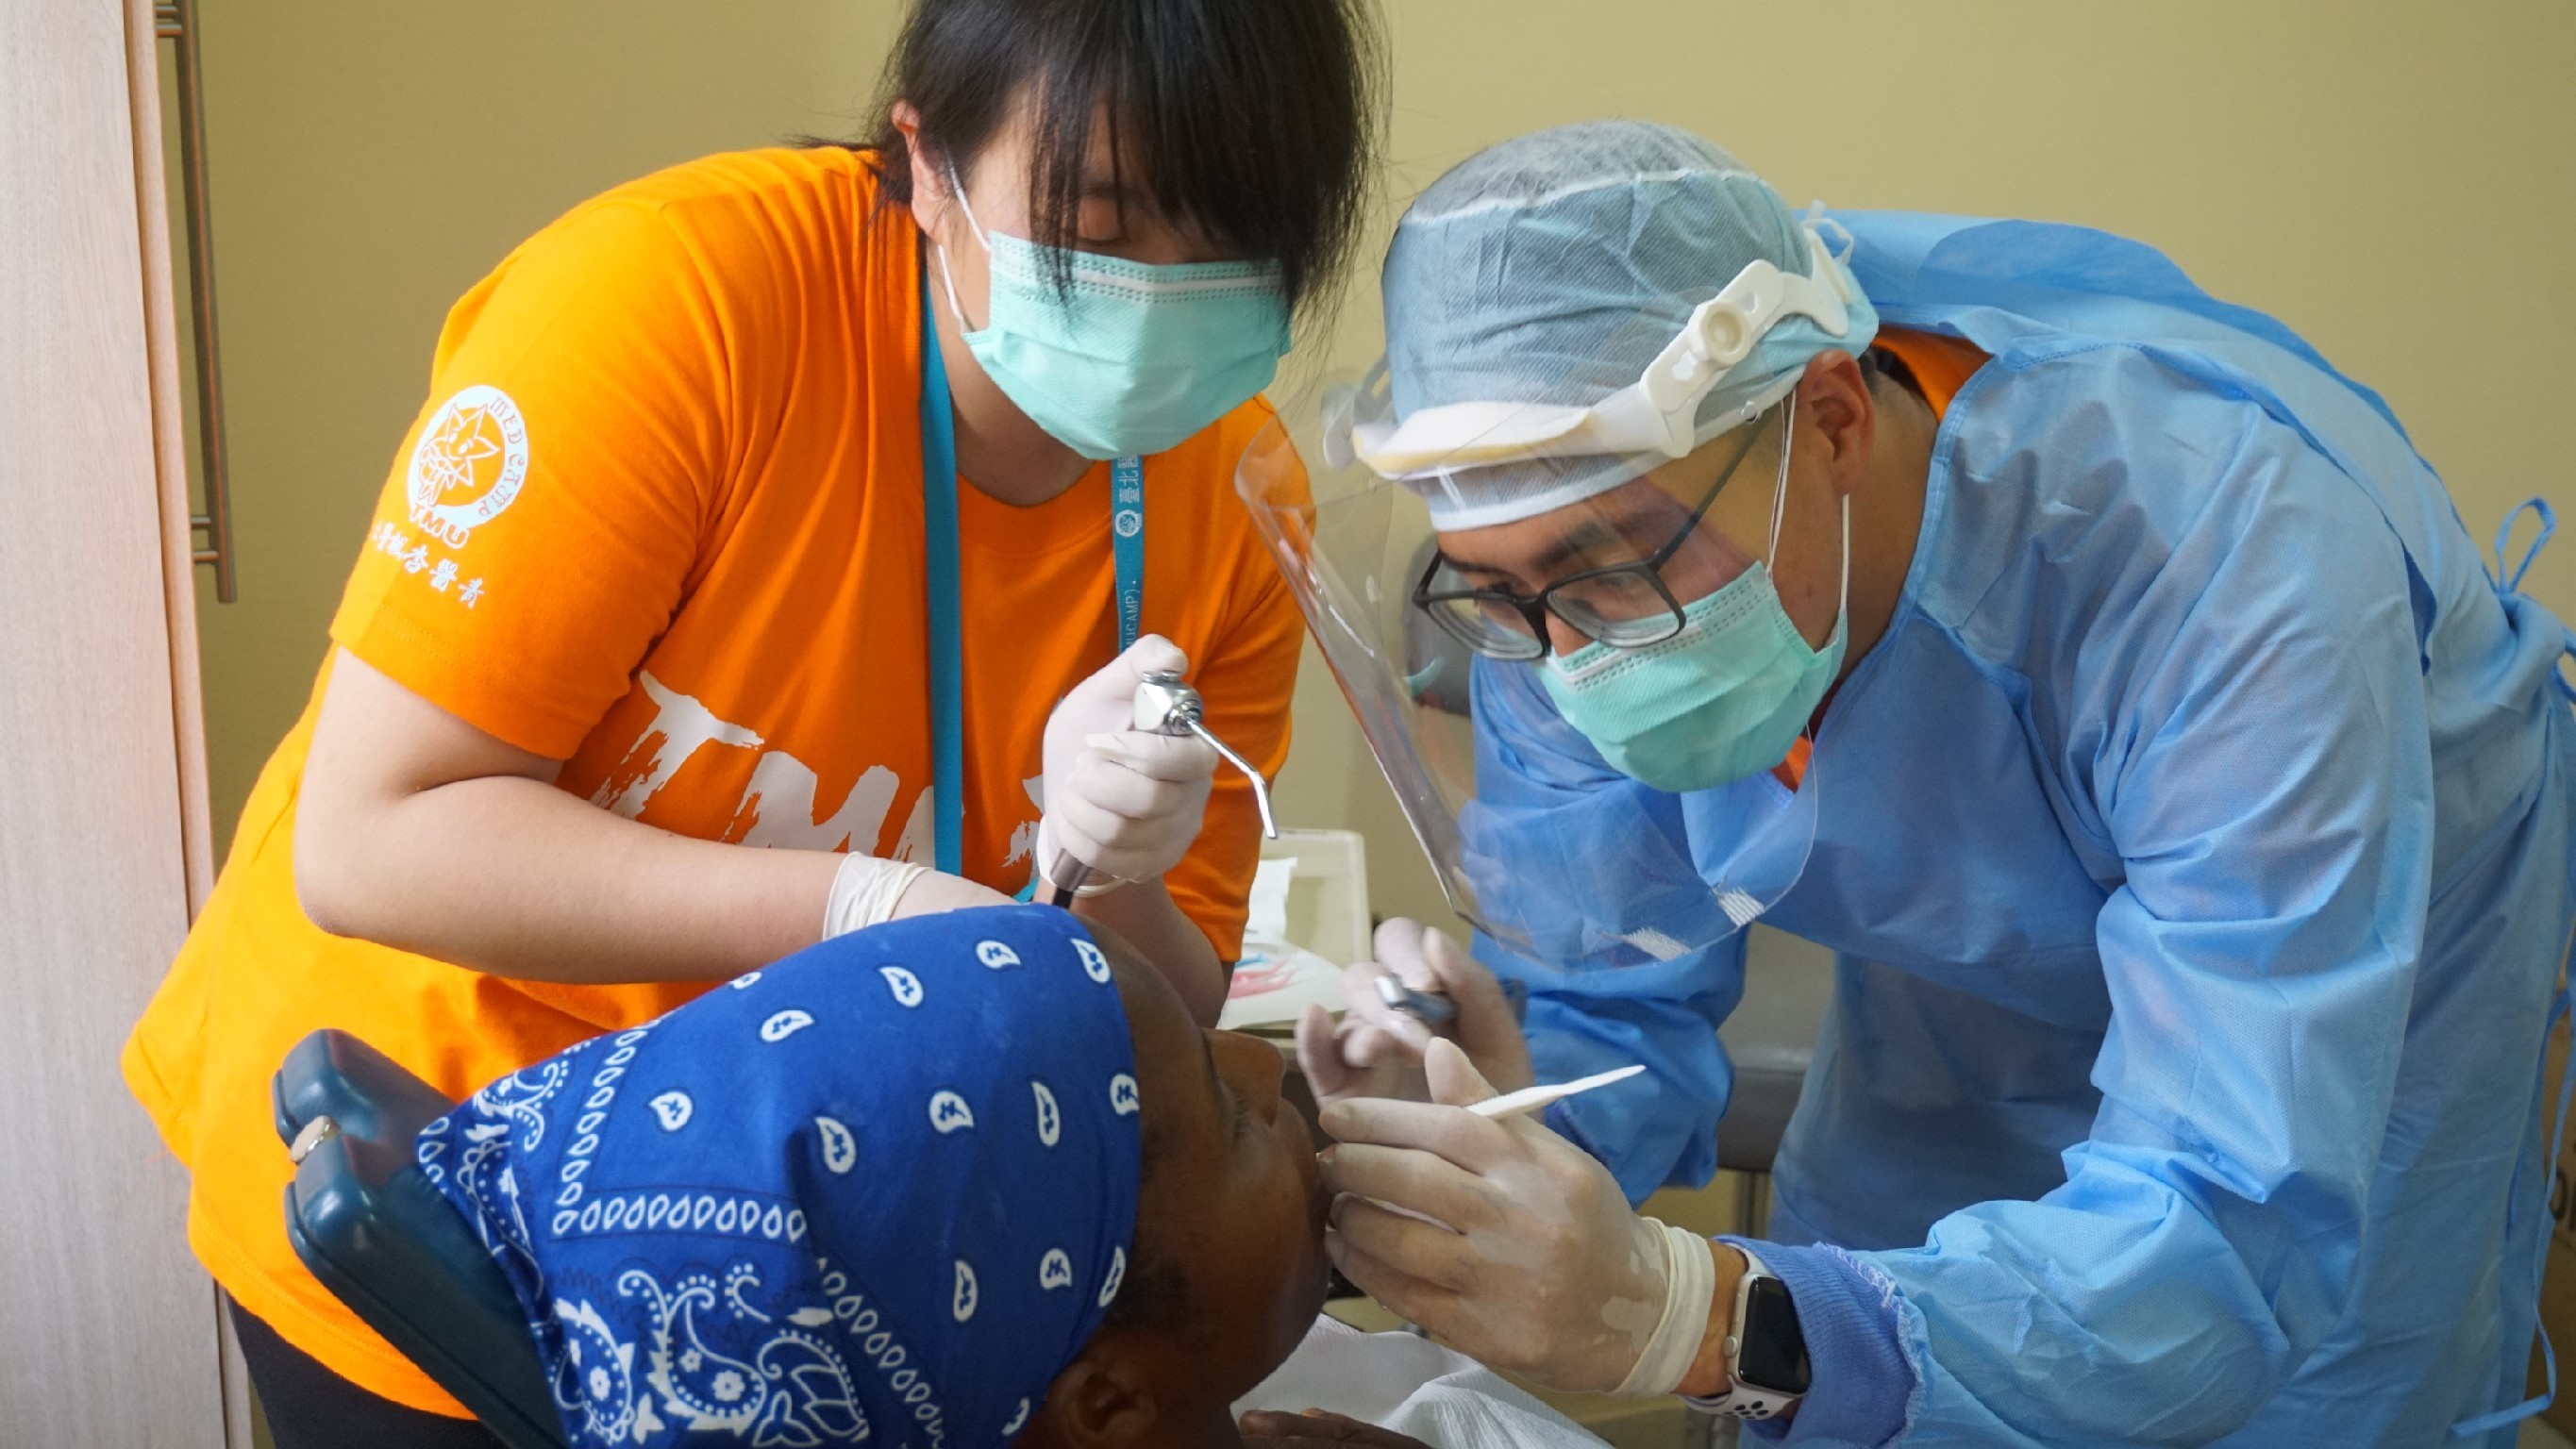 照片1-團員與牙醫師正協助為當地孩童進行口腔治療。